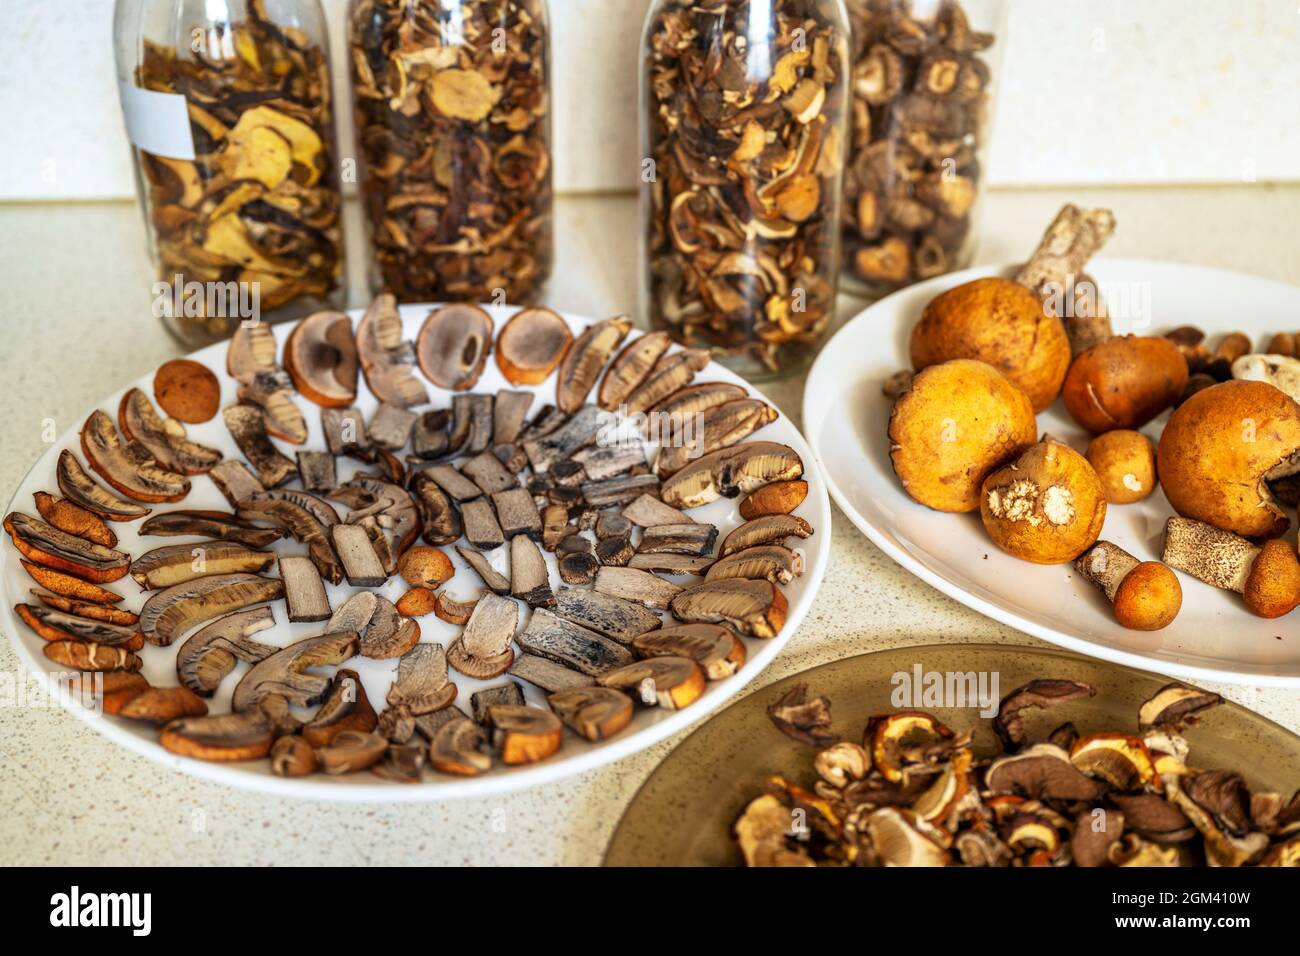 Molti funghi forestali, (principalmente con testa arancione Leccinum). I funghi sono per lo più crudi, interi o tagliati a fette su piatto ed essiccati in vetro alto sul tavolo da cucina. Foto Stock